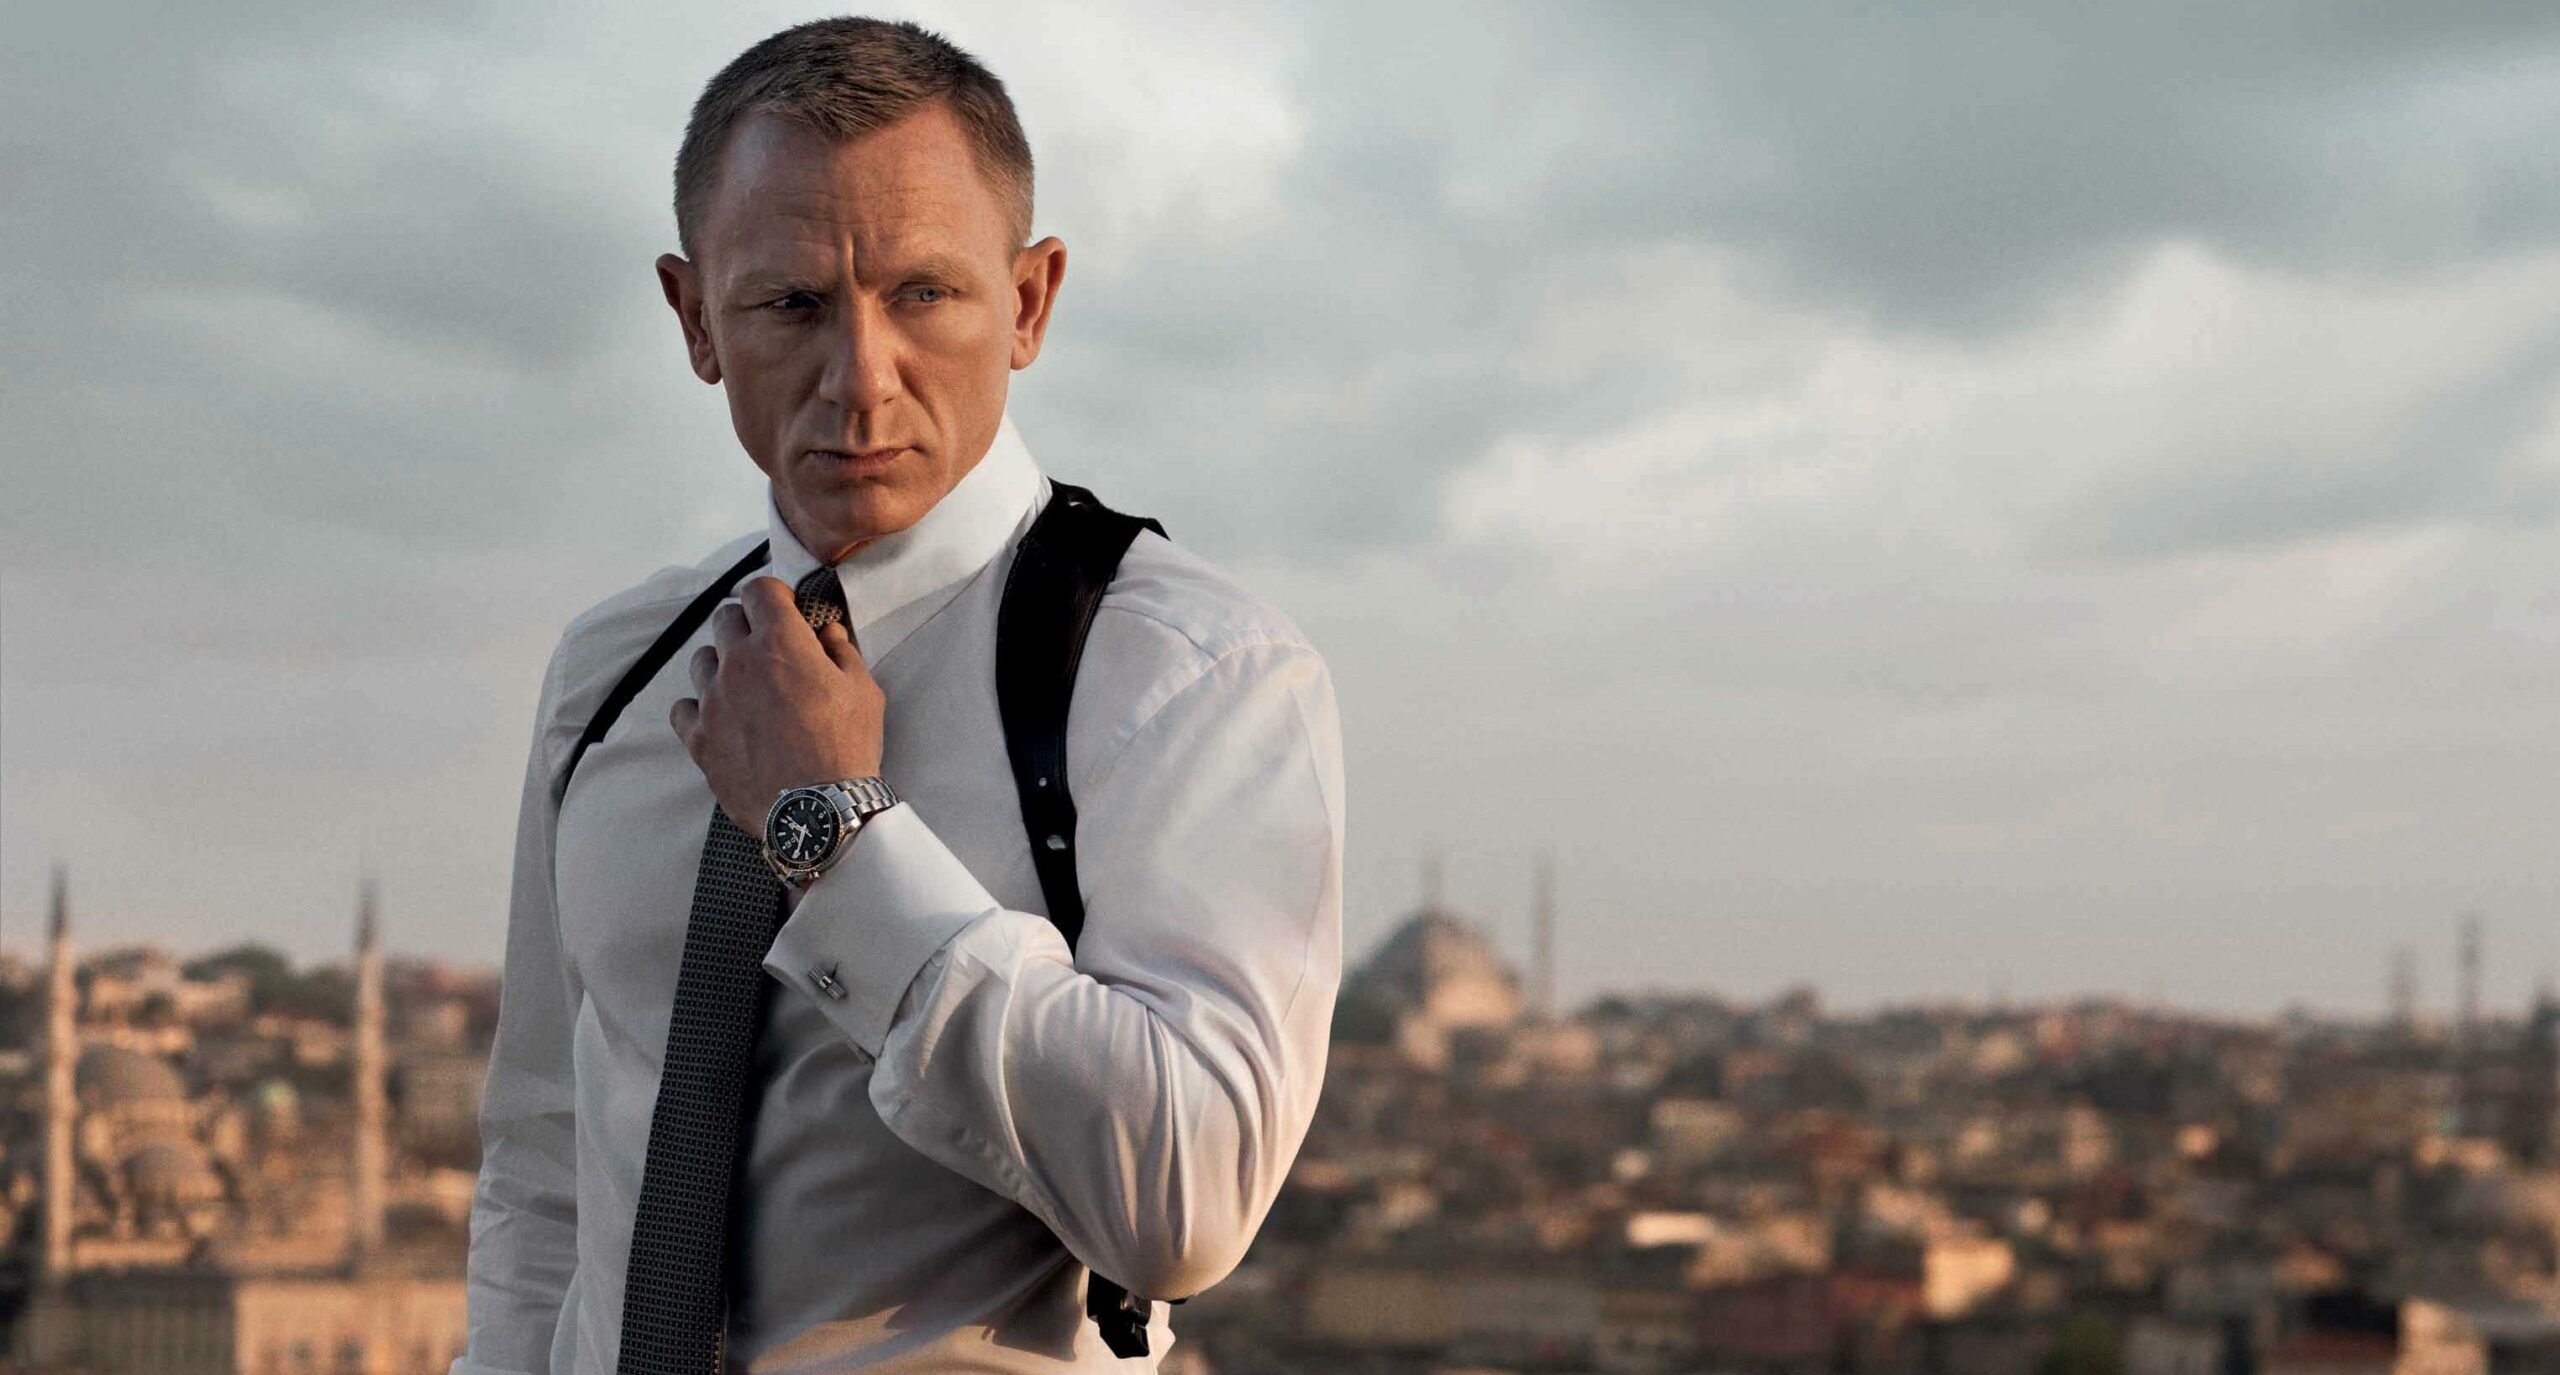 James Bond, Books, Movies, Actors, & Facts